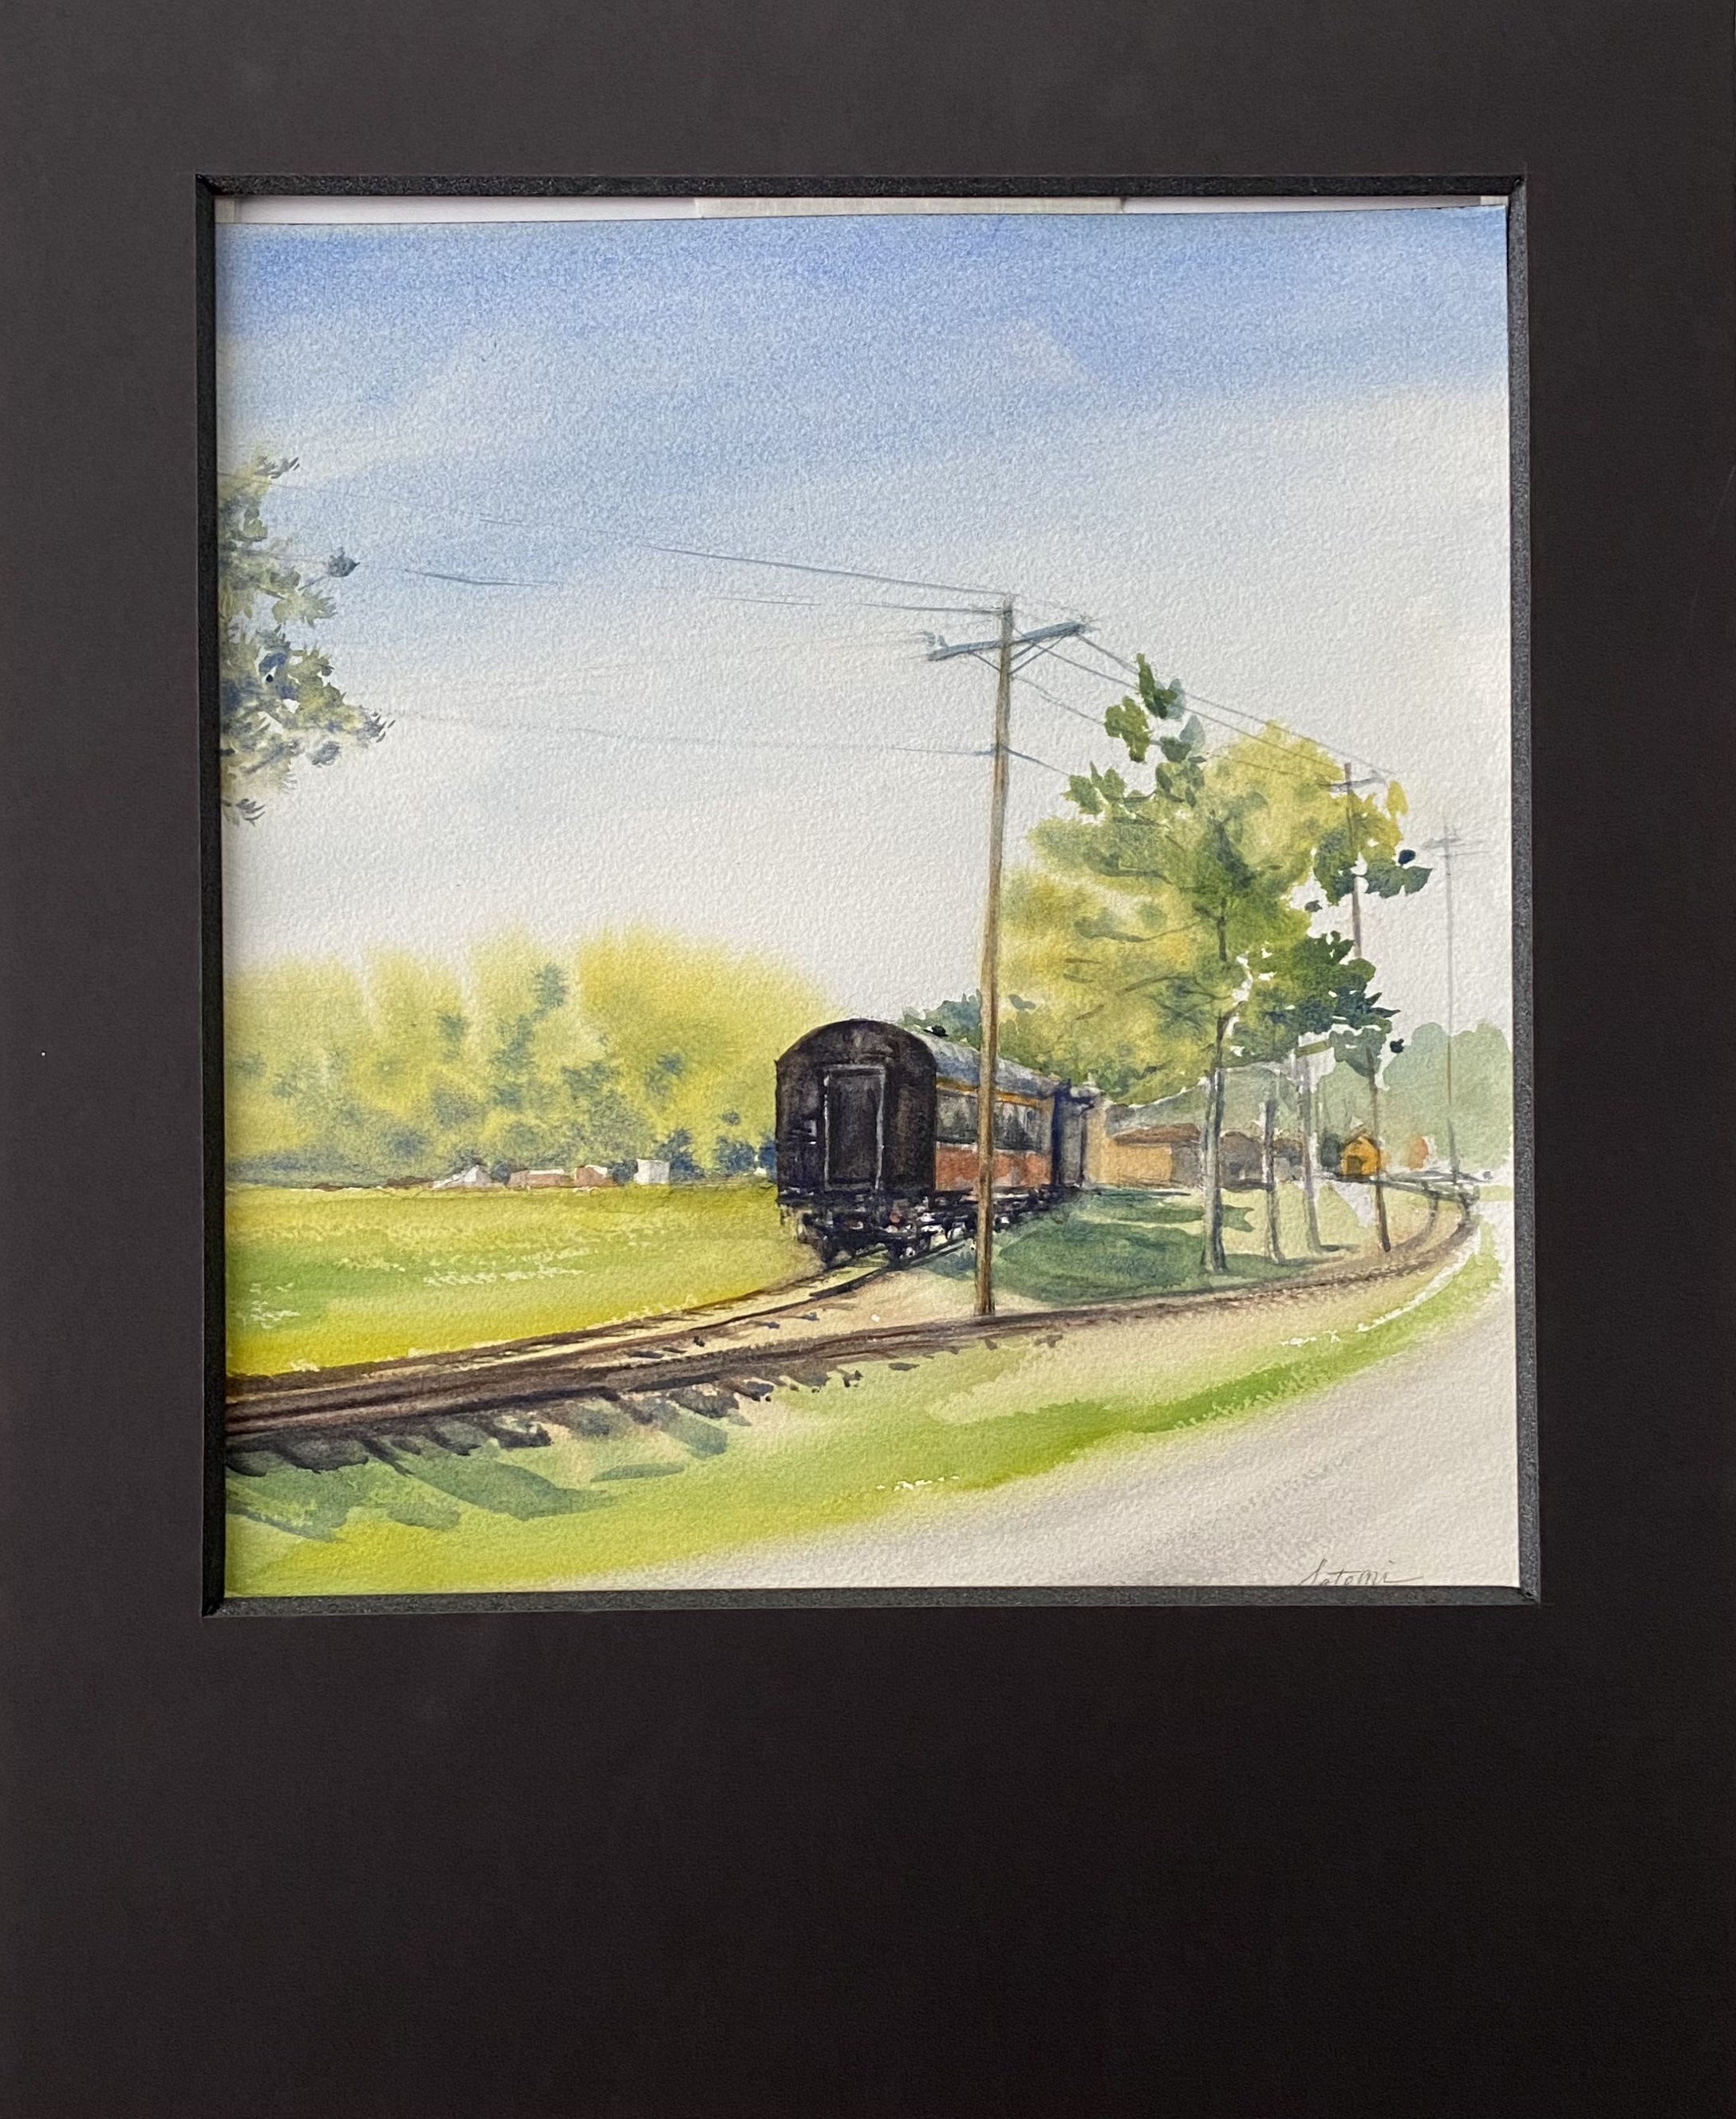 Railroad Museum - Monticello
Watercolor
12.5" X 13.5"
$190.
